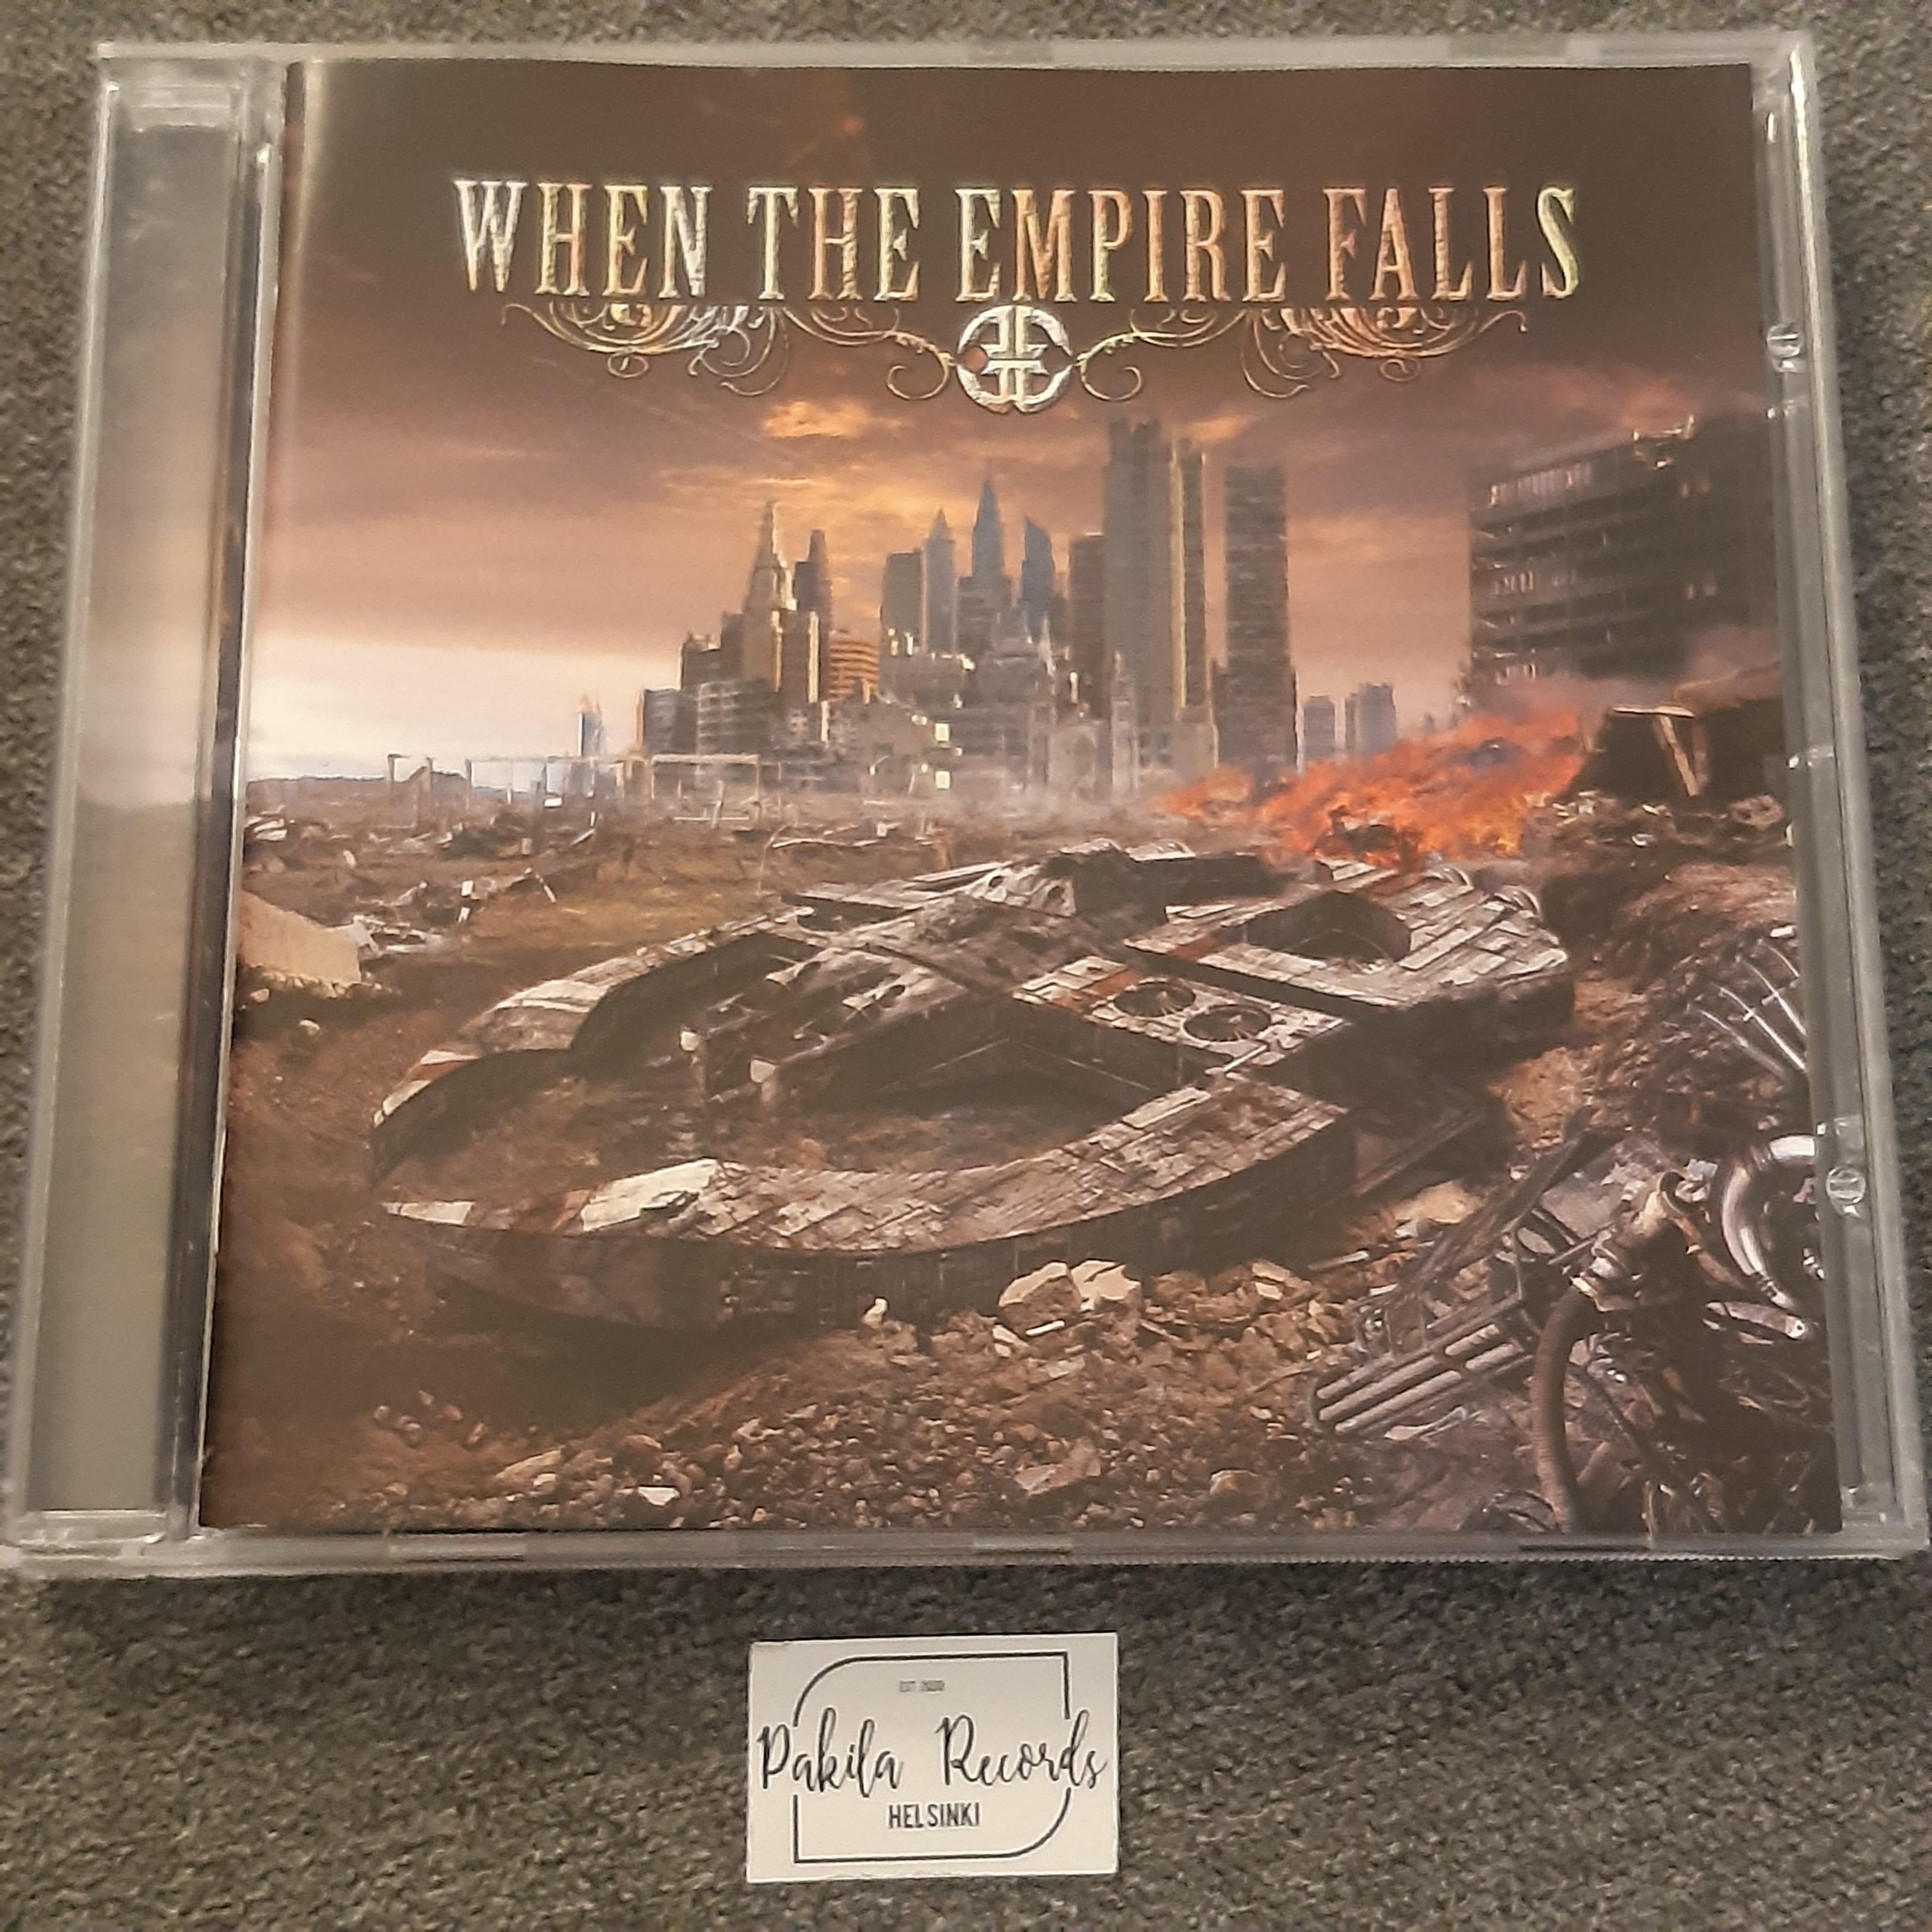 When The Empire Falls - When The Empire Falls - CD (käytetty)